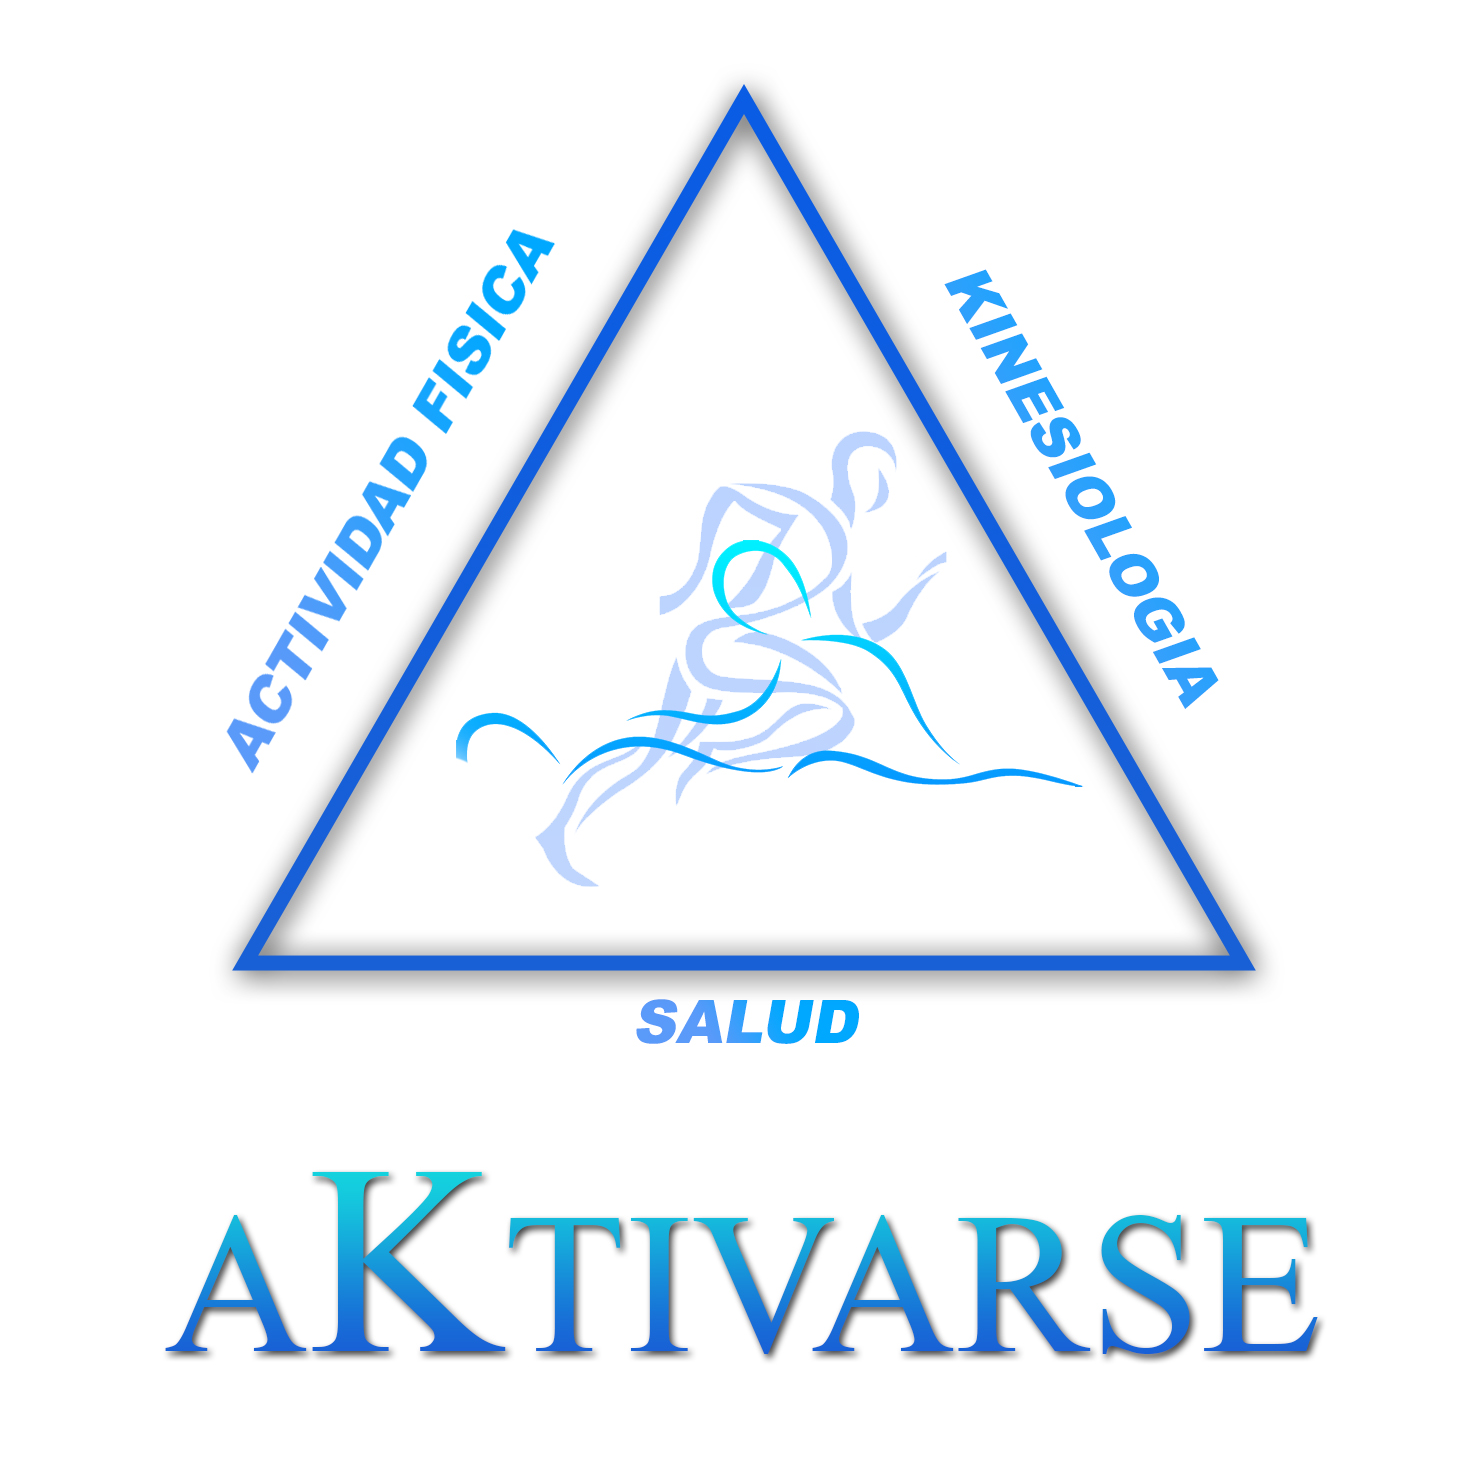 AKtivarse logo